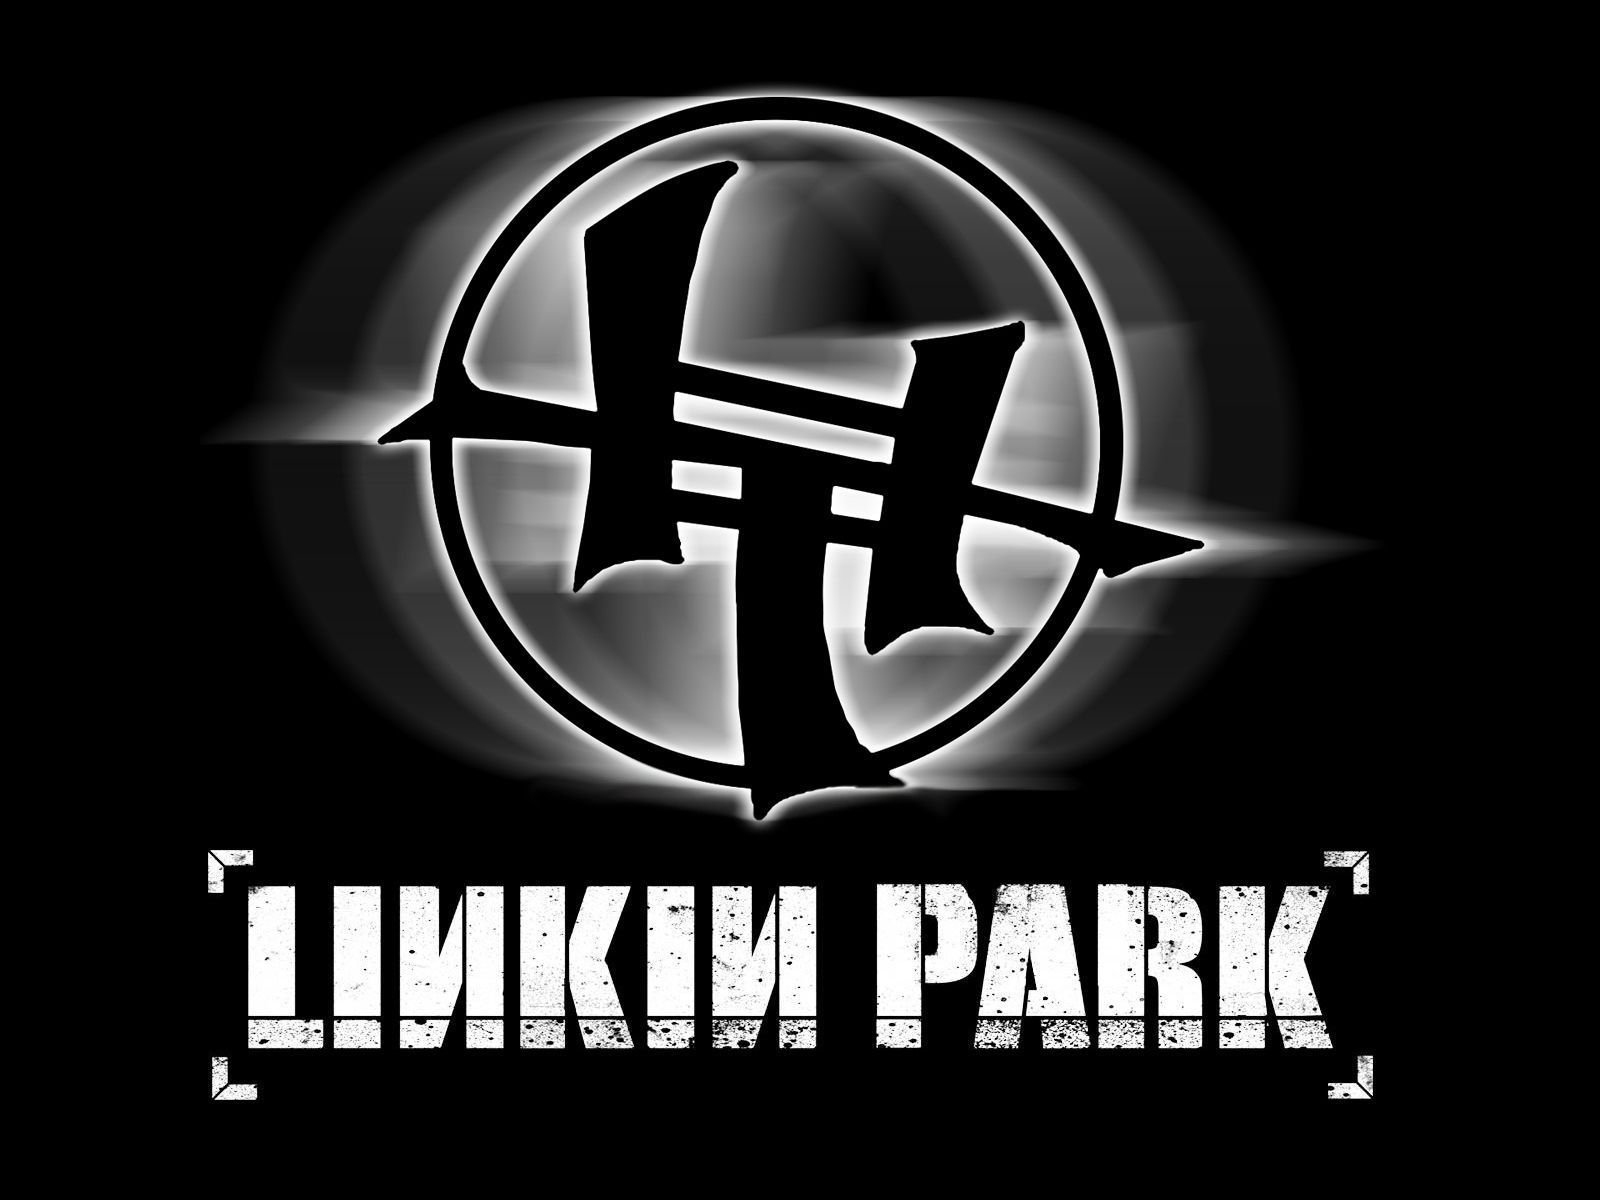 LP - Linkin Park Wallpaper (22168678) - Fanpop